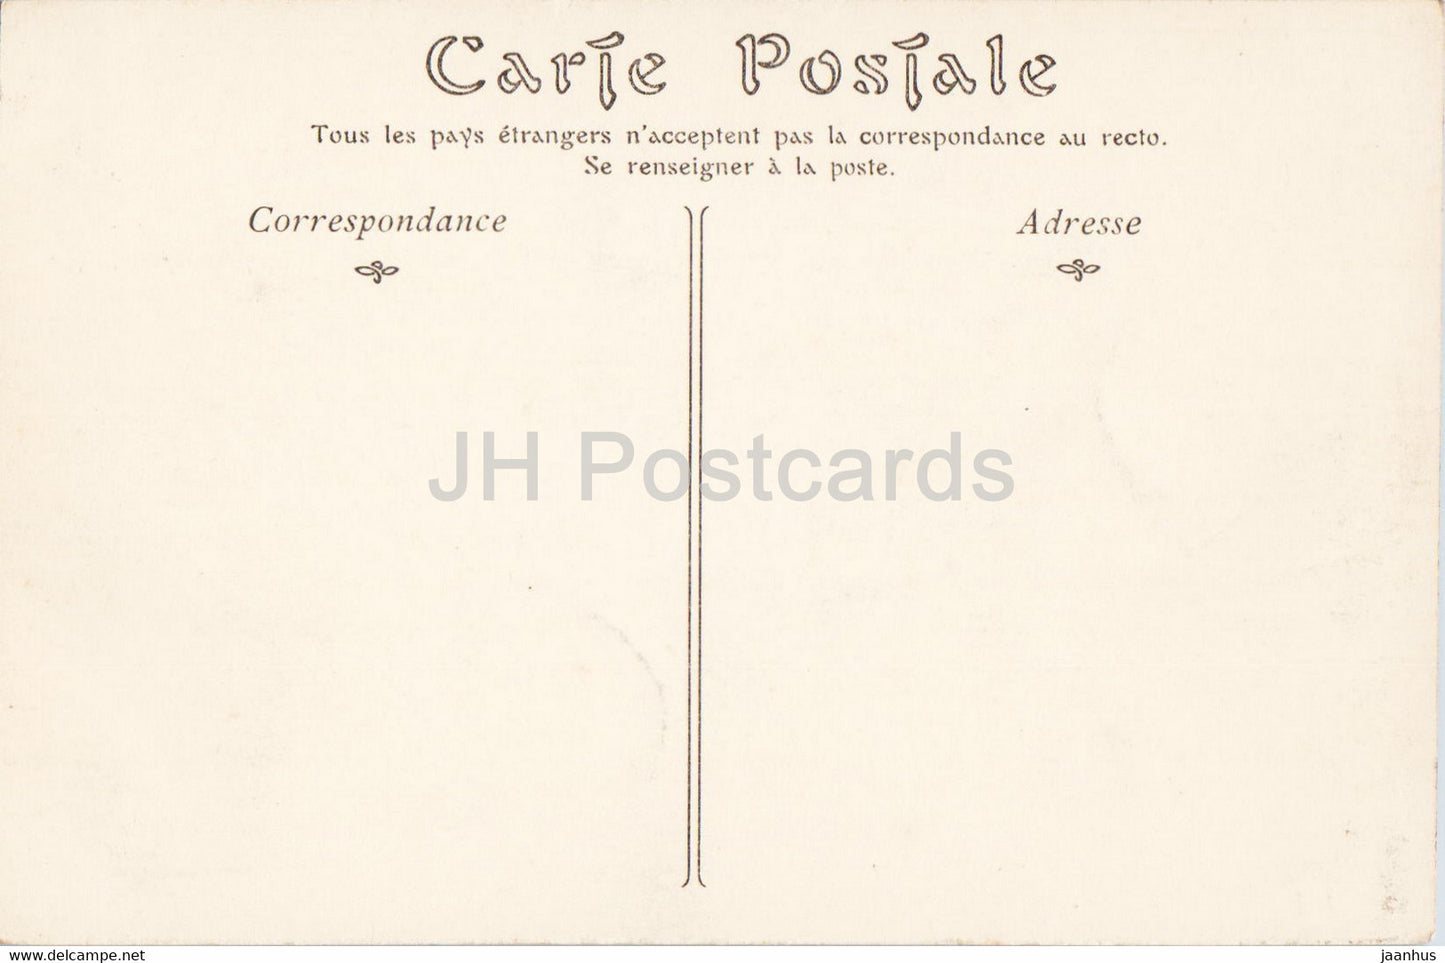 Paris - Le Jardin du Palais Royal - 128 - alte Postkarte - Frankreich - unbenutzt